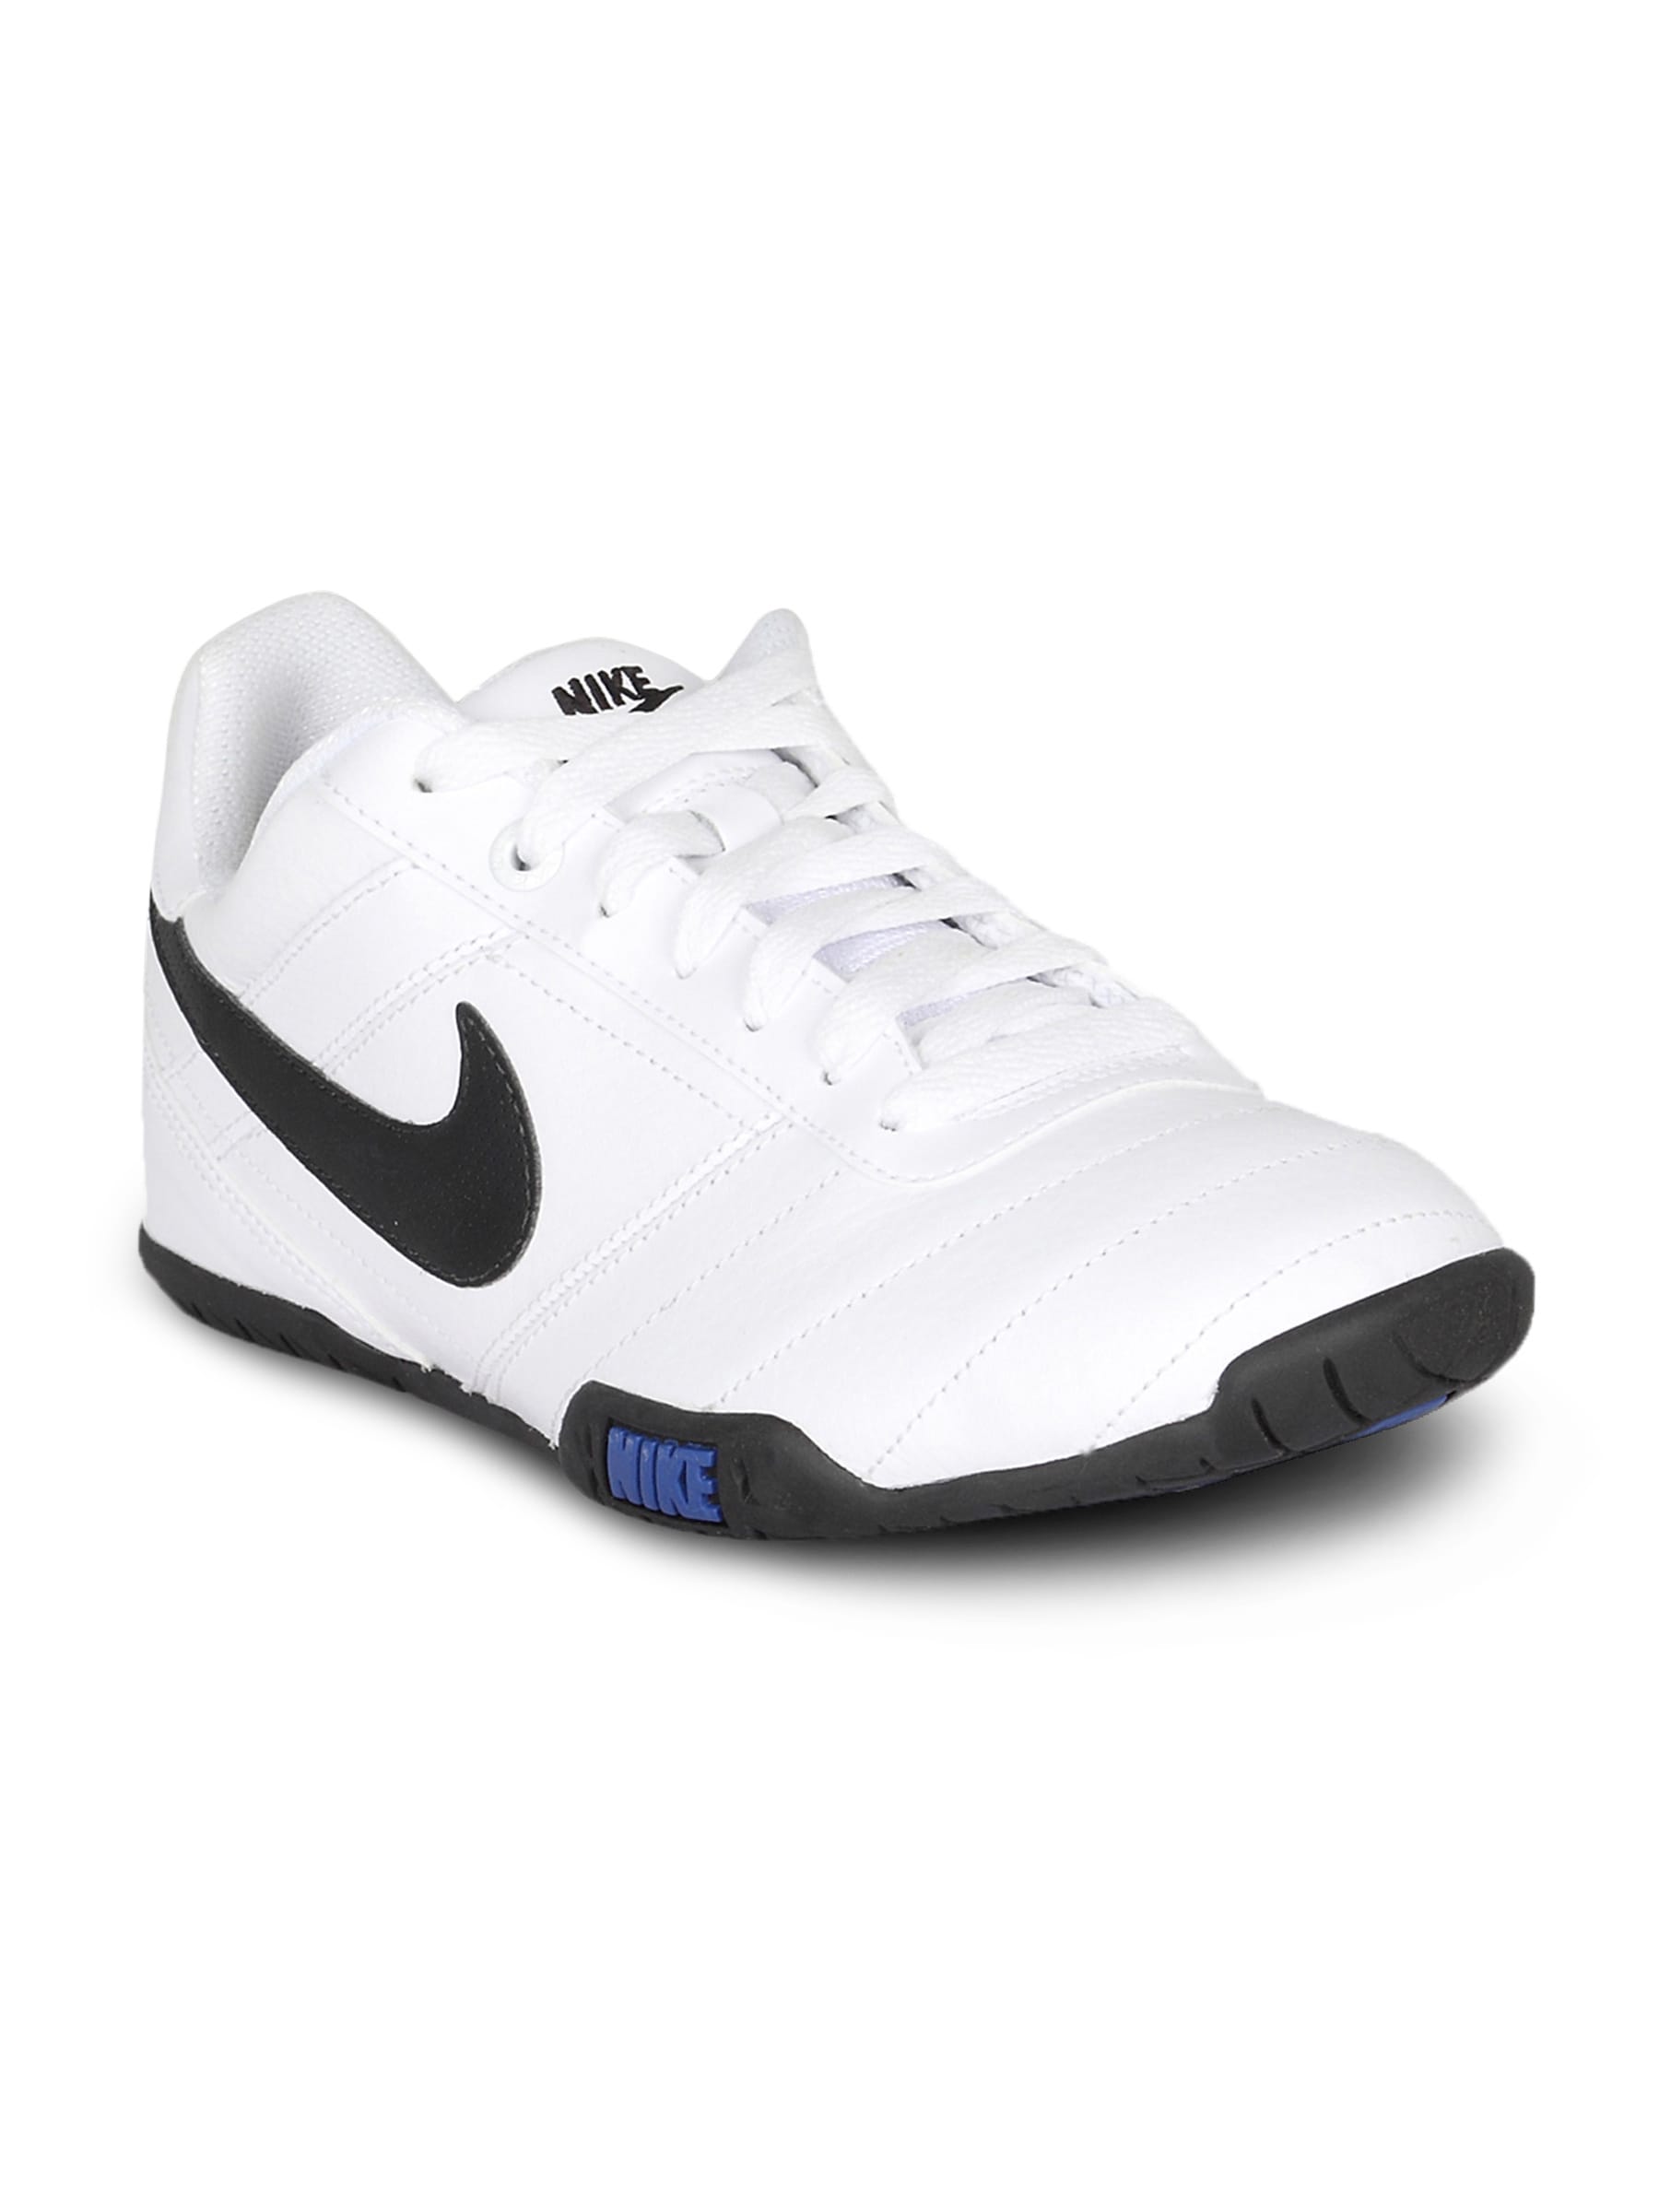 Nike Men's Street Pana II White Shoe